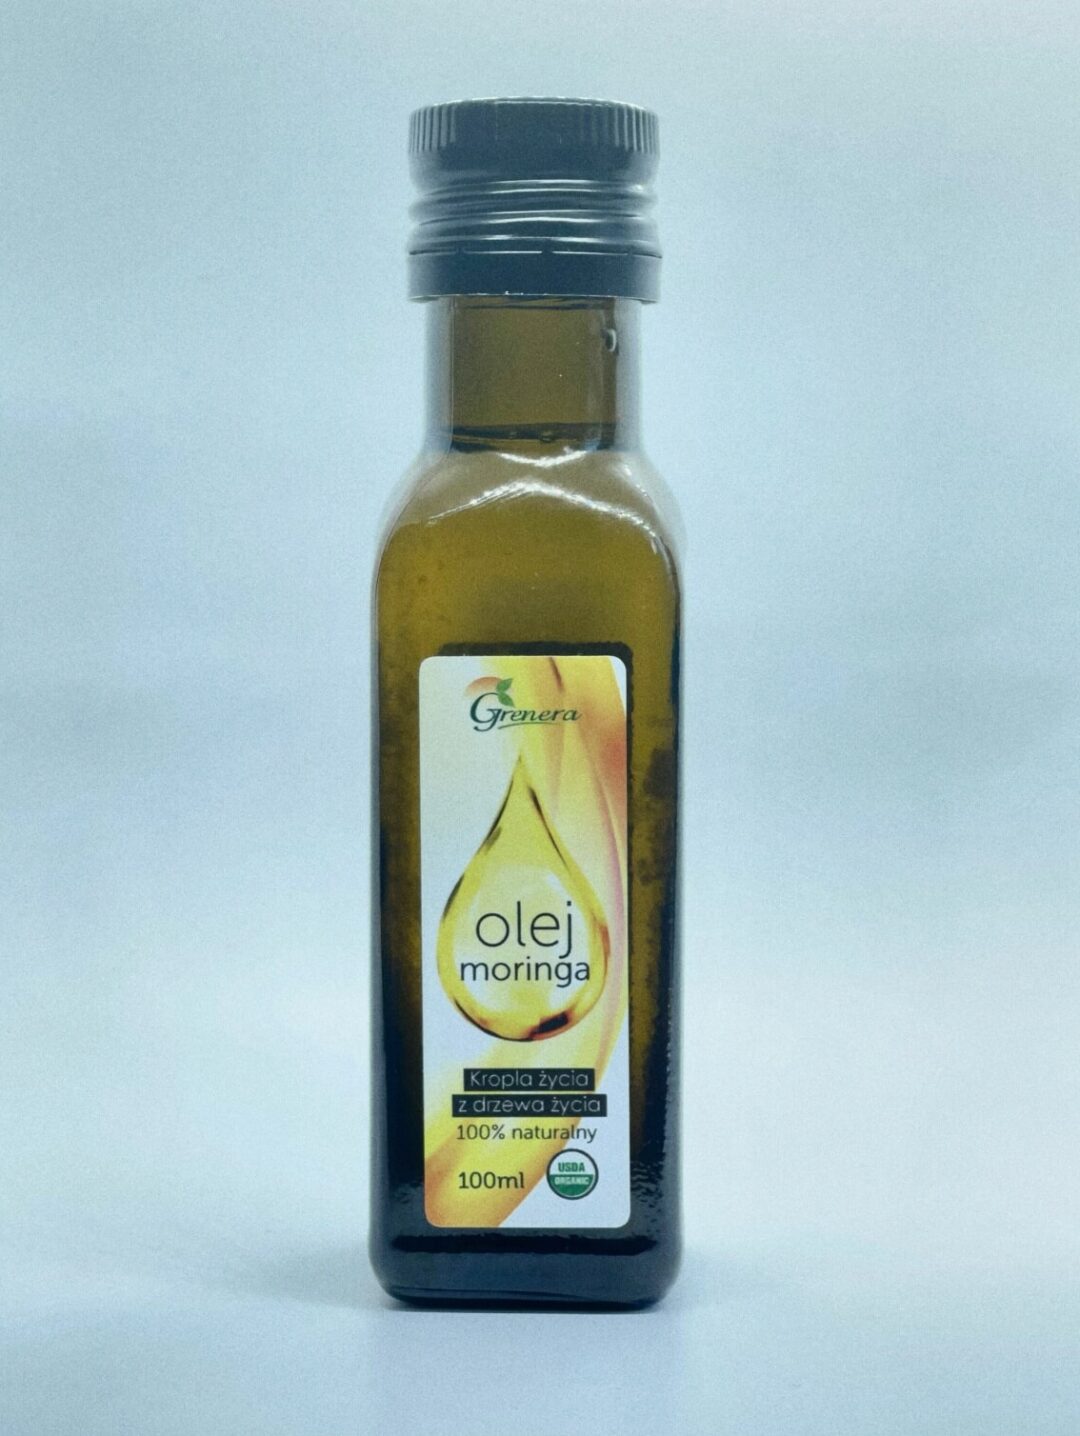 pijnoni-olej spozywczy moringa